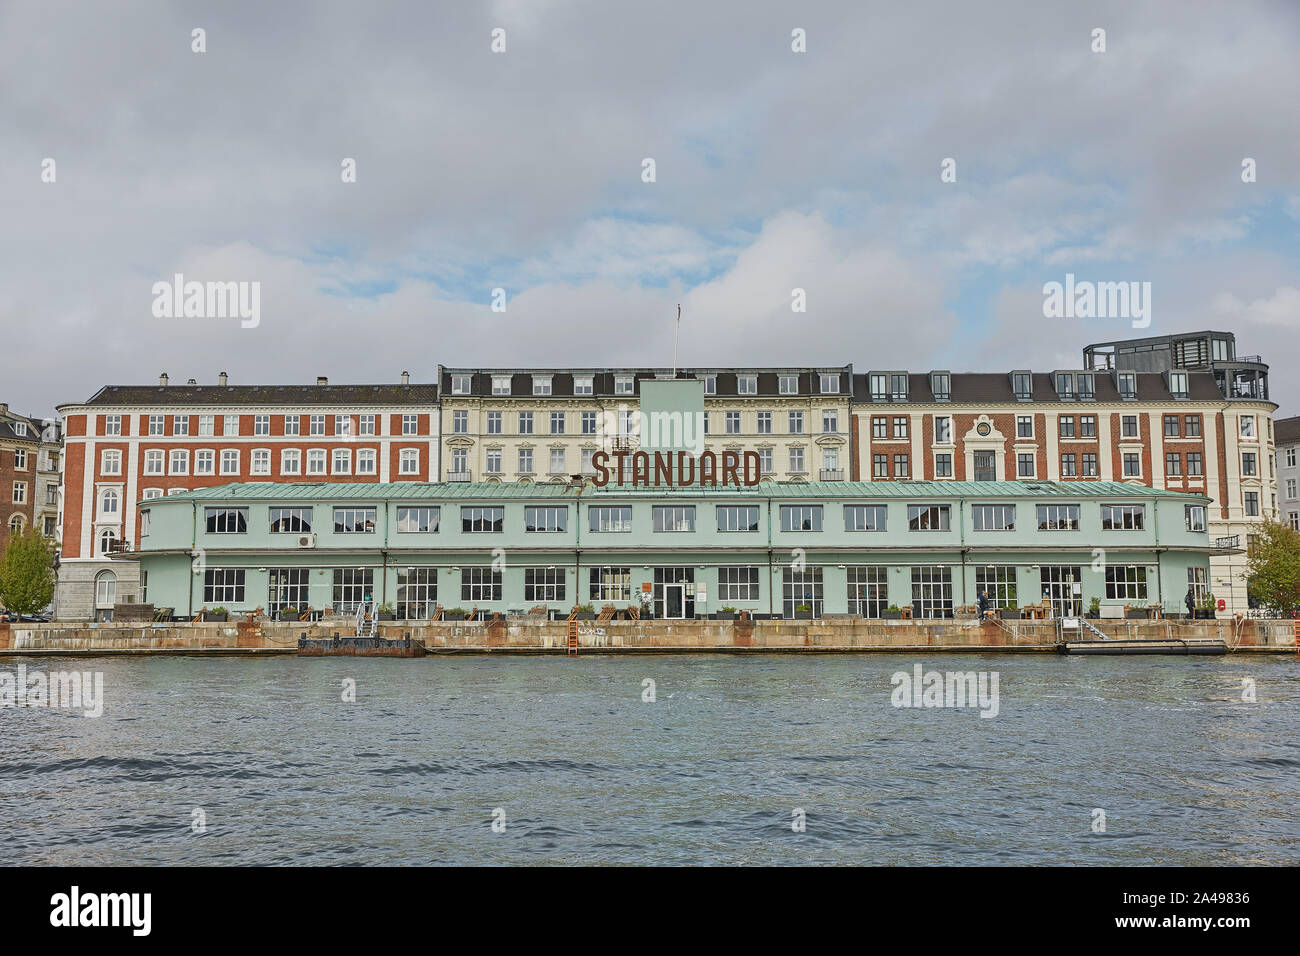 Copenhague, Danemark - 16 septembre 2017 : un restaurant 'Standard' complexes sur l'Havnegade. Construction standard (1937) est un ancien custom house et FERR Banque D'Images